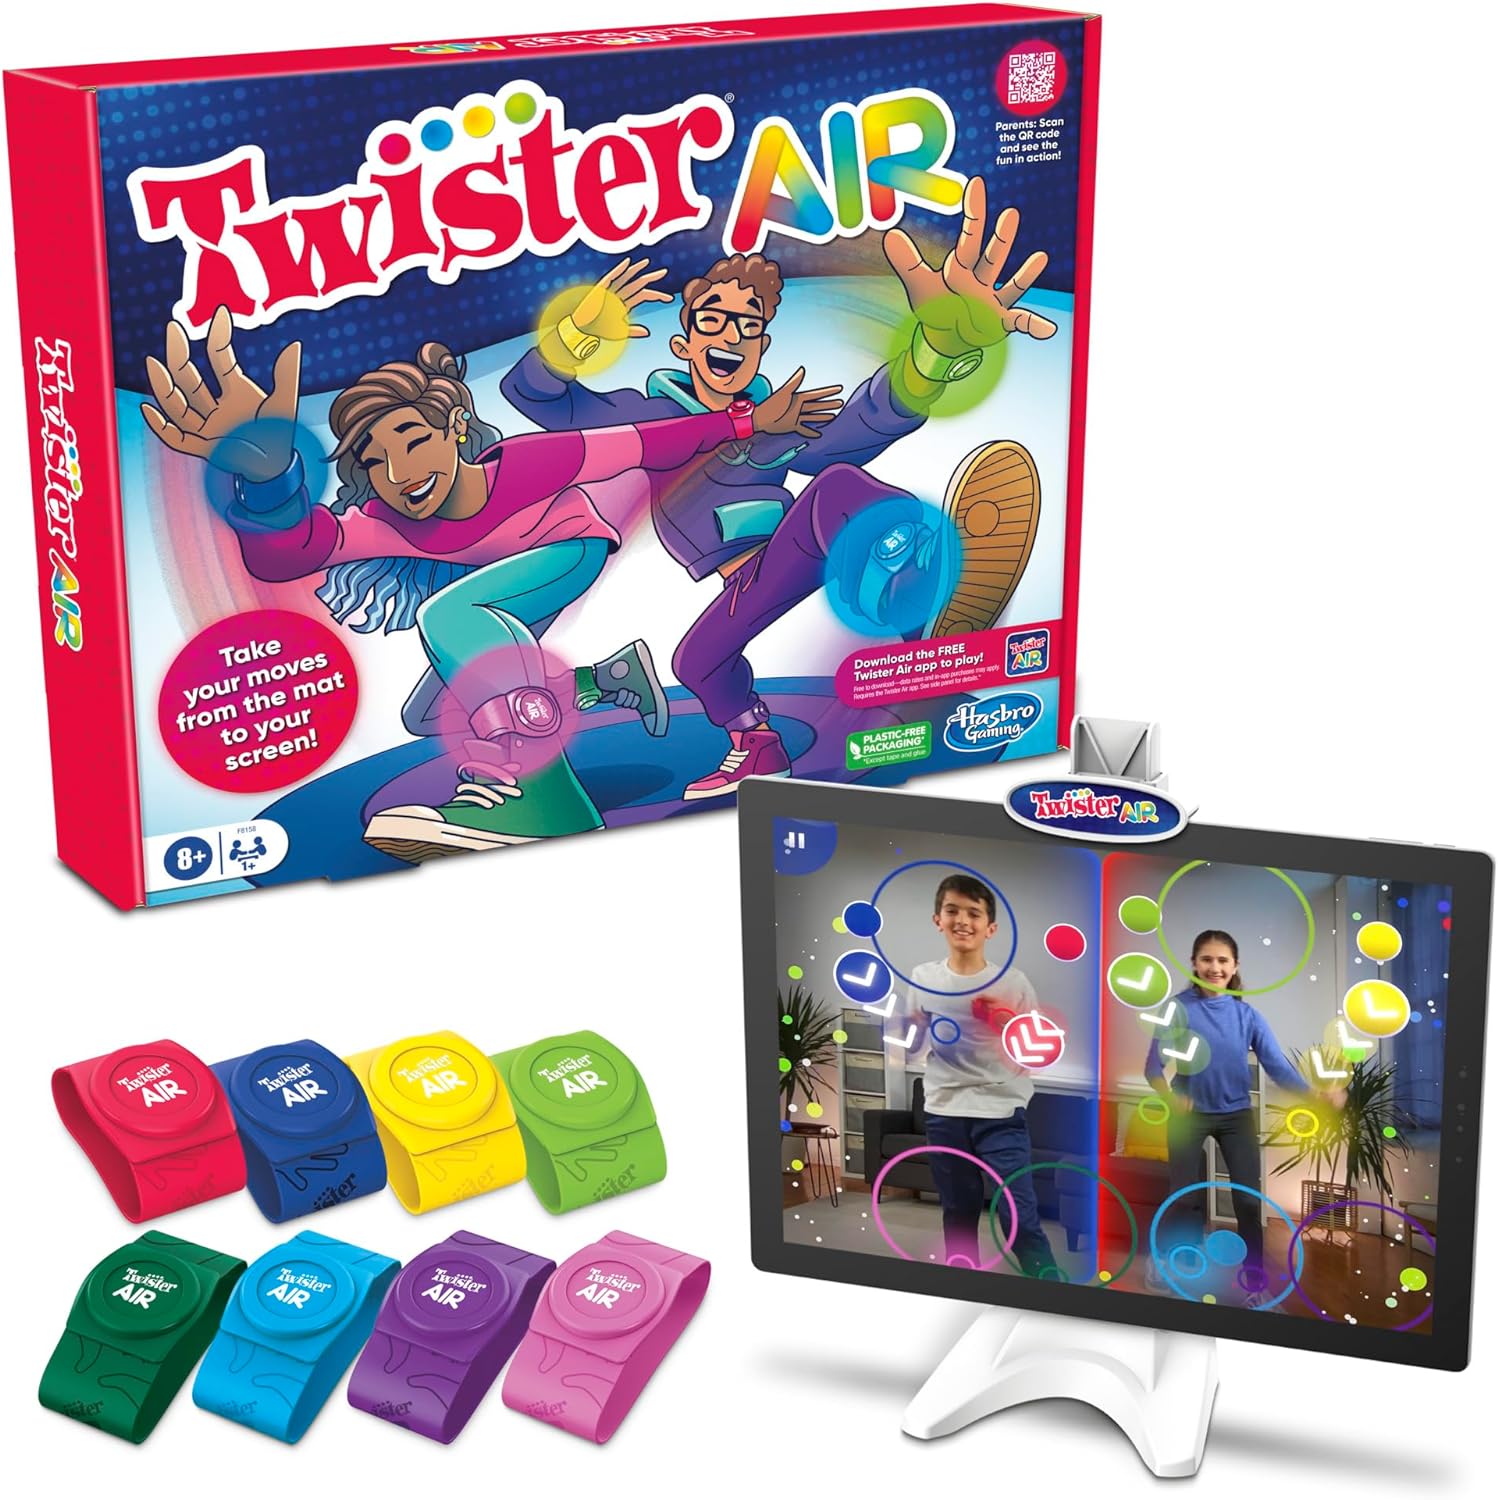 Twister Air kostet 24,99 £